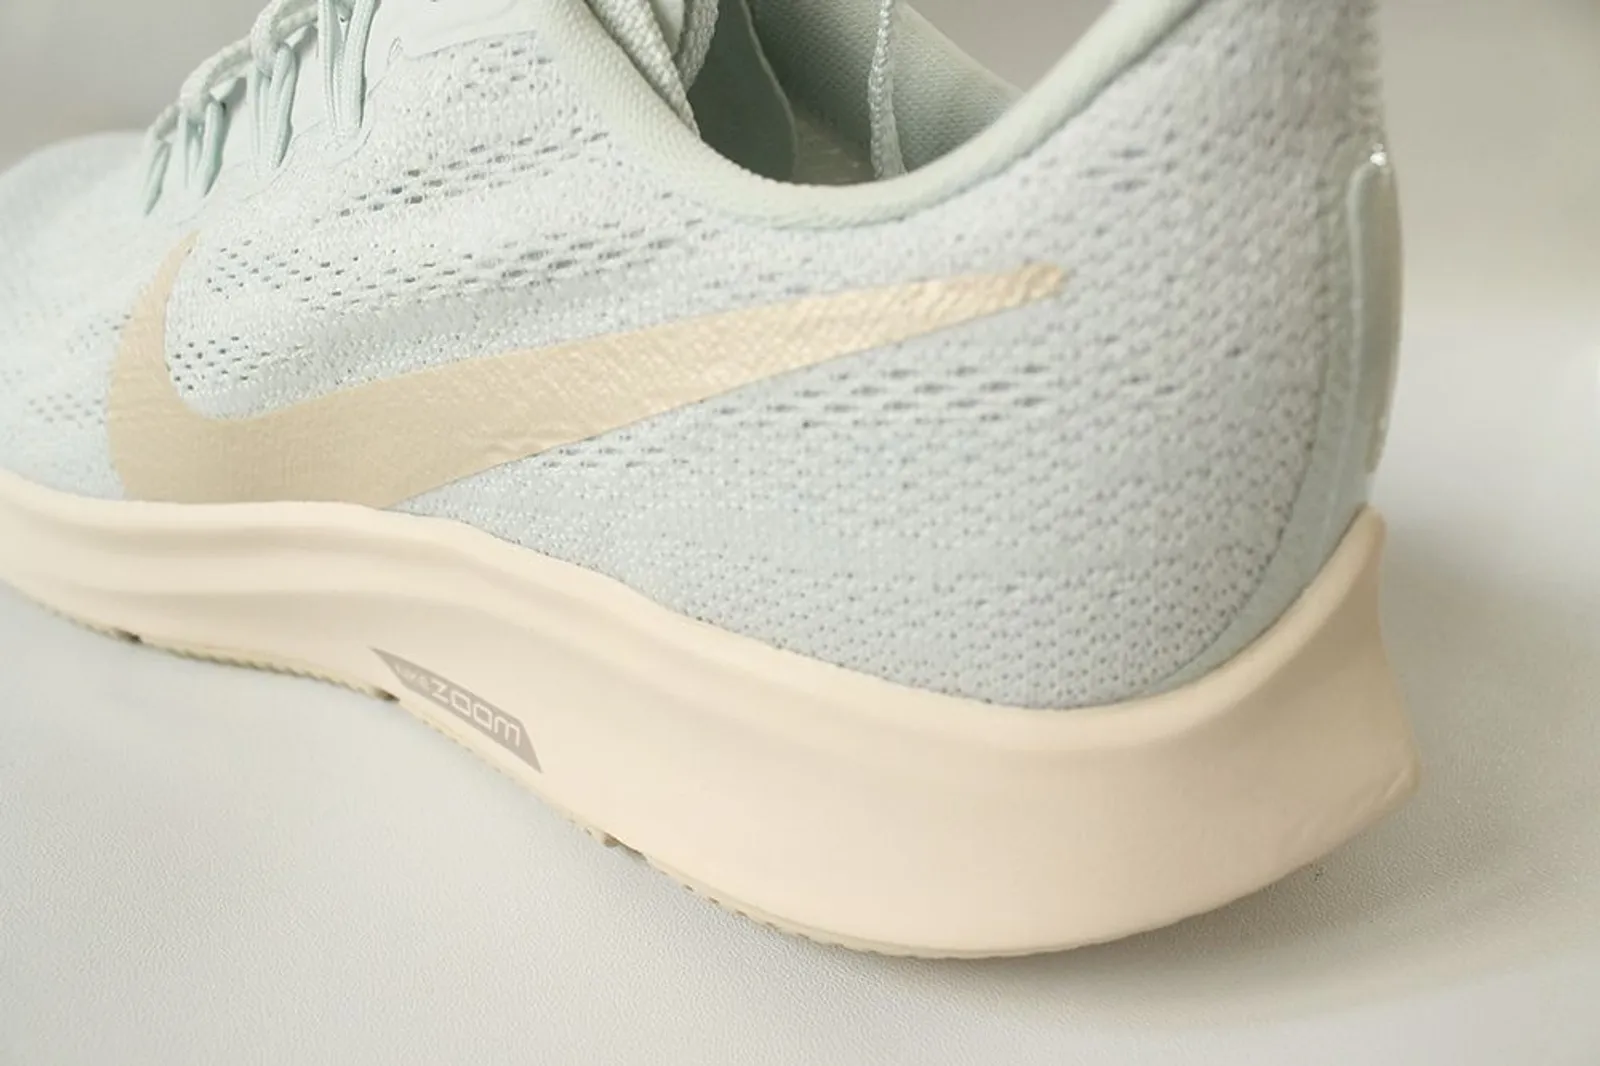 #Review: Nike Air Zoom Pegasus 36 Bikin Gerakan Kaki Lebih Fleksibel